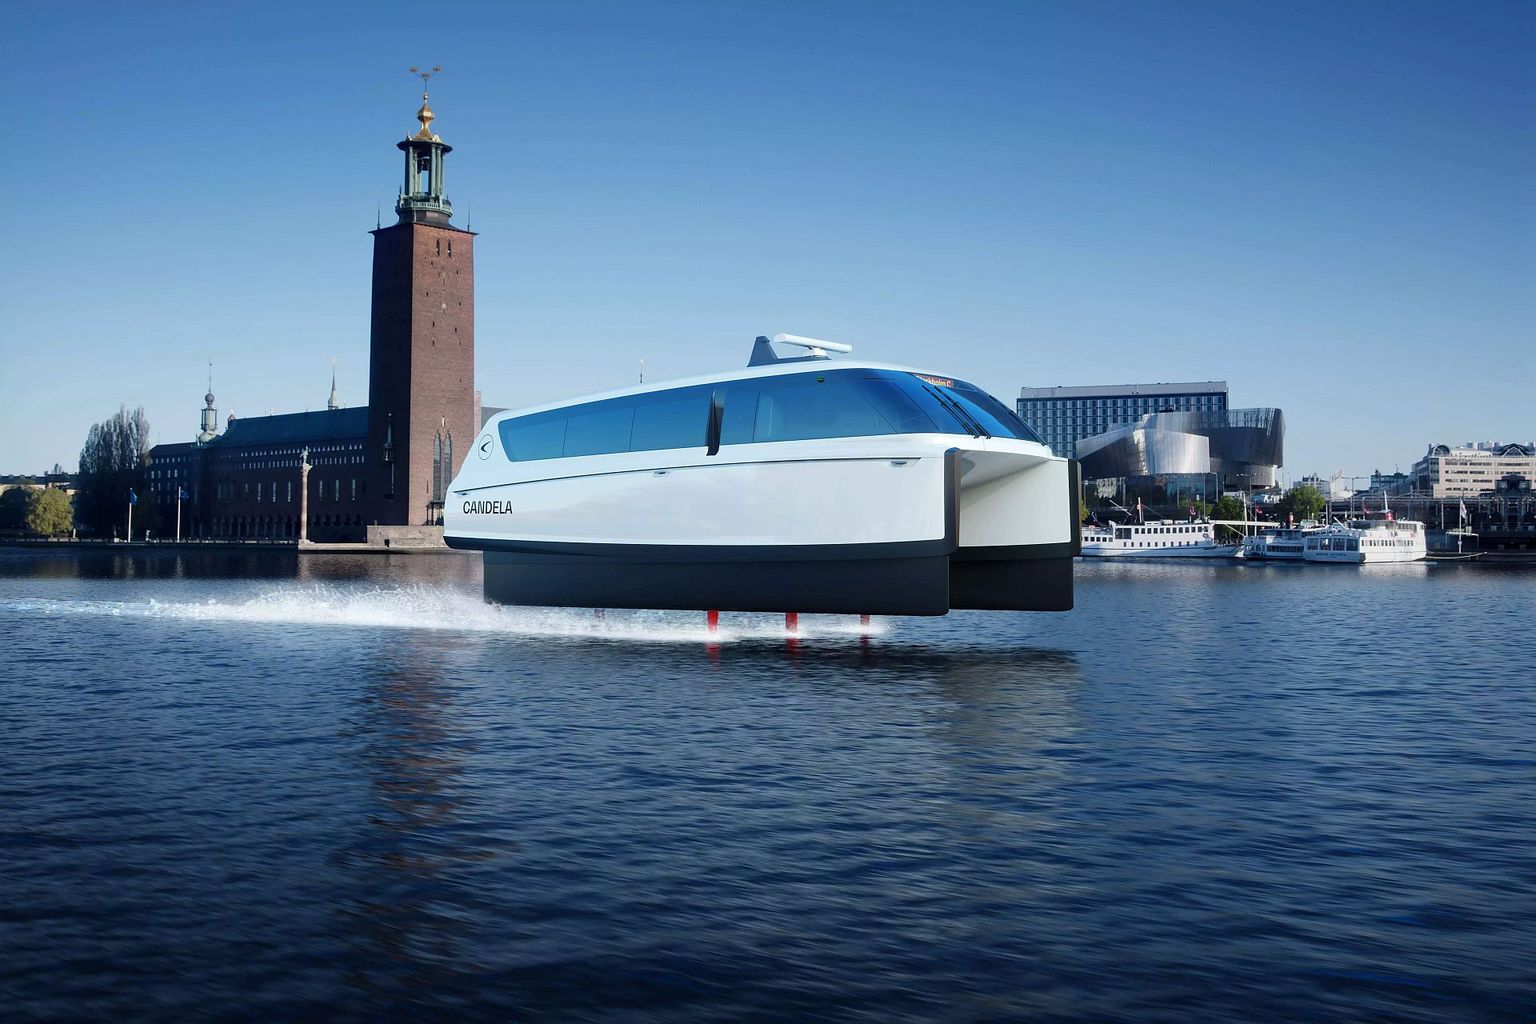 Uus veealuste tiibadega elektrilaev vähendab energiakulu kuni 95% võrreldes tavaliste diiselmootoriga laevadega. Just selline hakkab järgmisel aastal reisijaid vedama Stockholmi kesklinna ja äärelinna vahel.